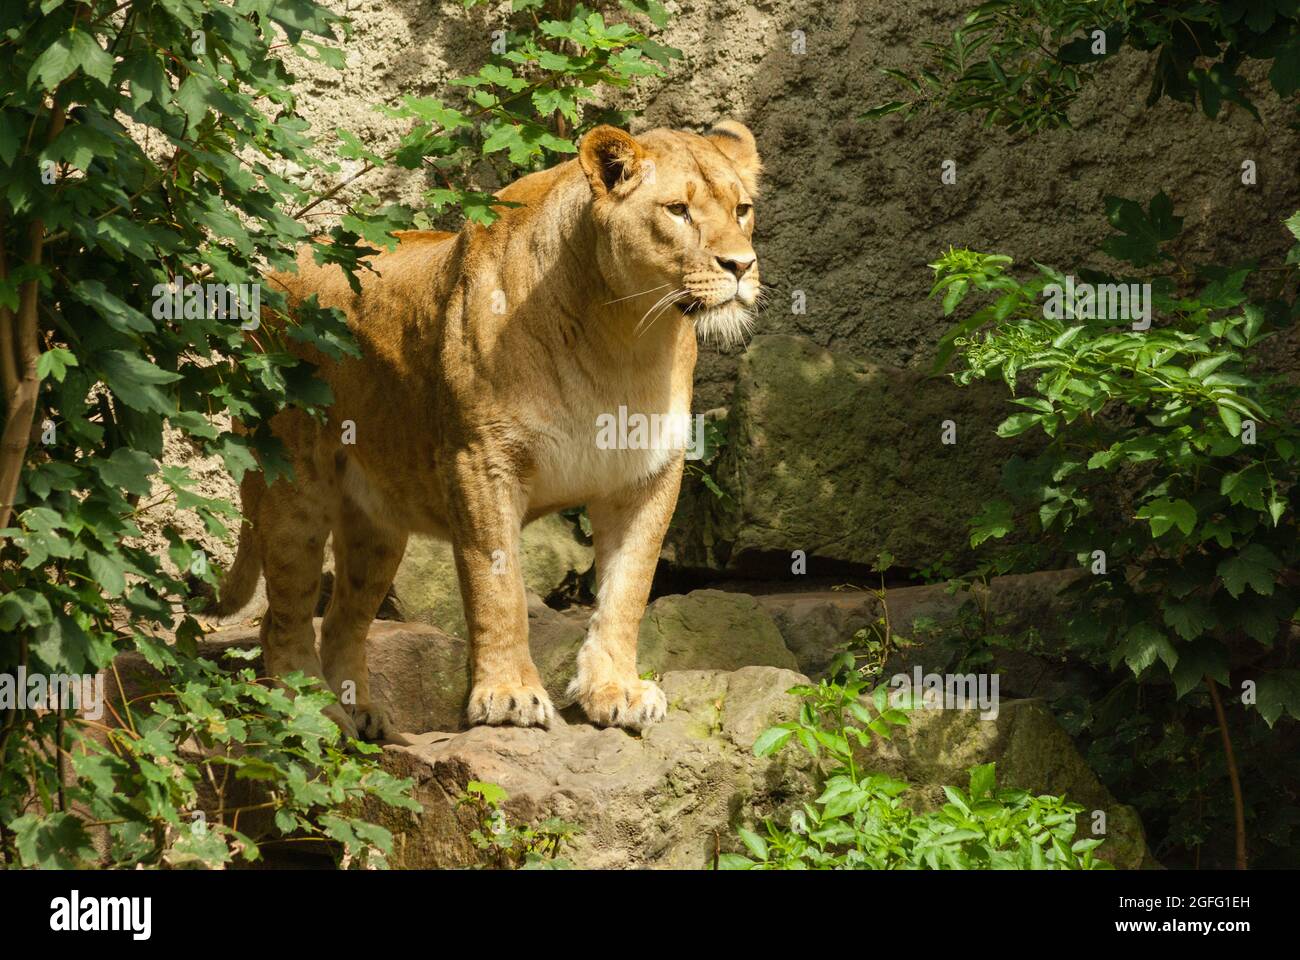 Lioness debout sur un rocher entouré de verdure, regardant au loin. L'attitude alerte d'un combattant concentré. Banque D'Images